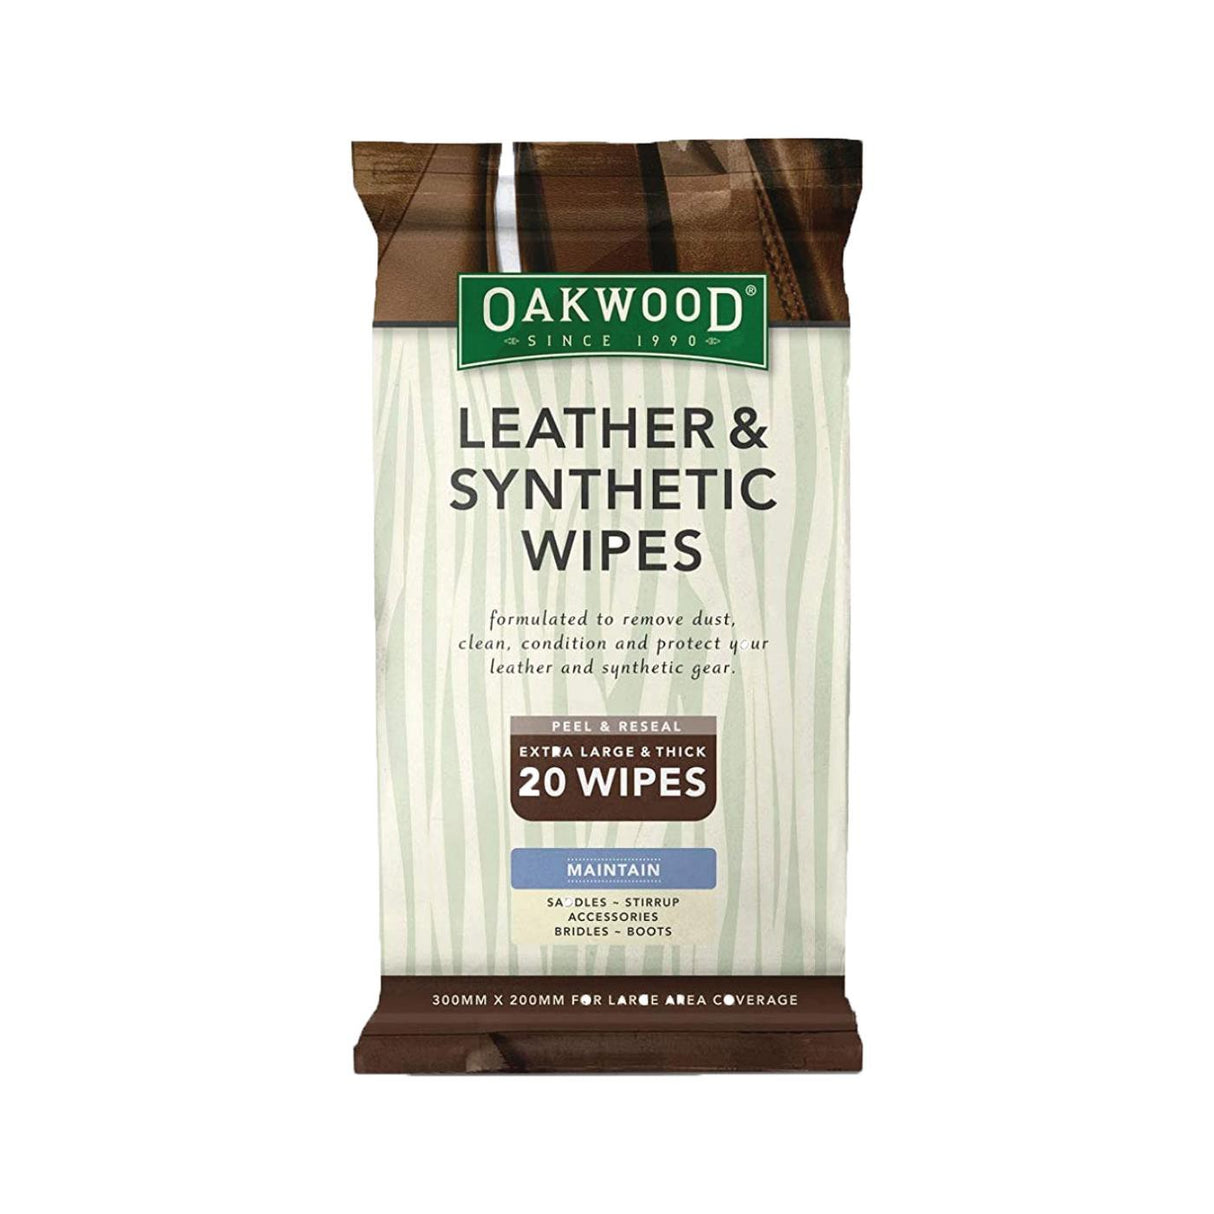 Oakwood Leather & Synthetic Wipes